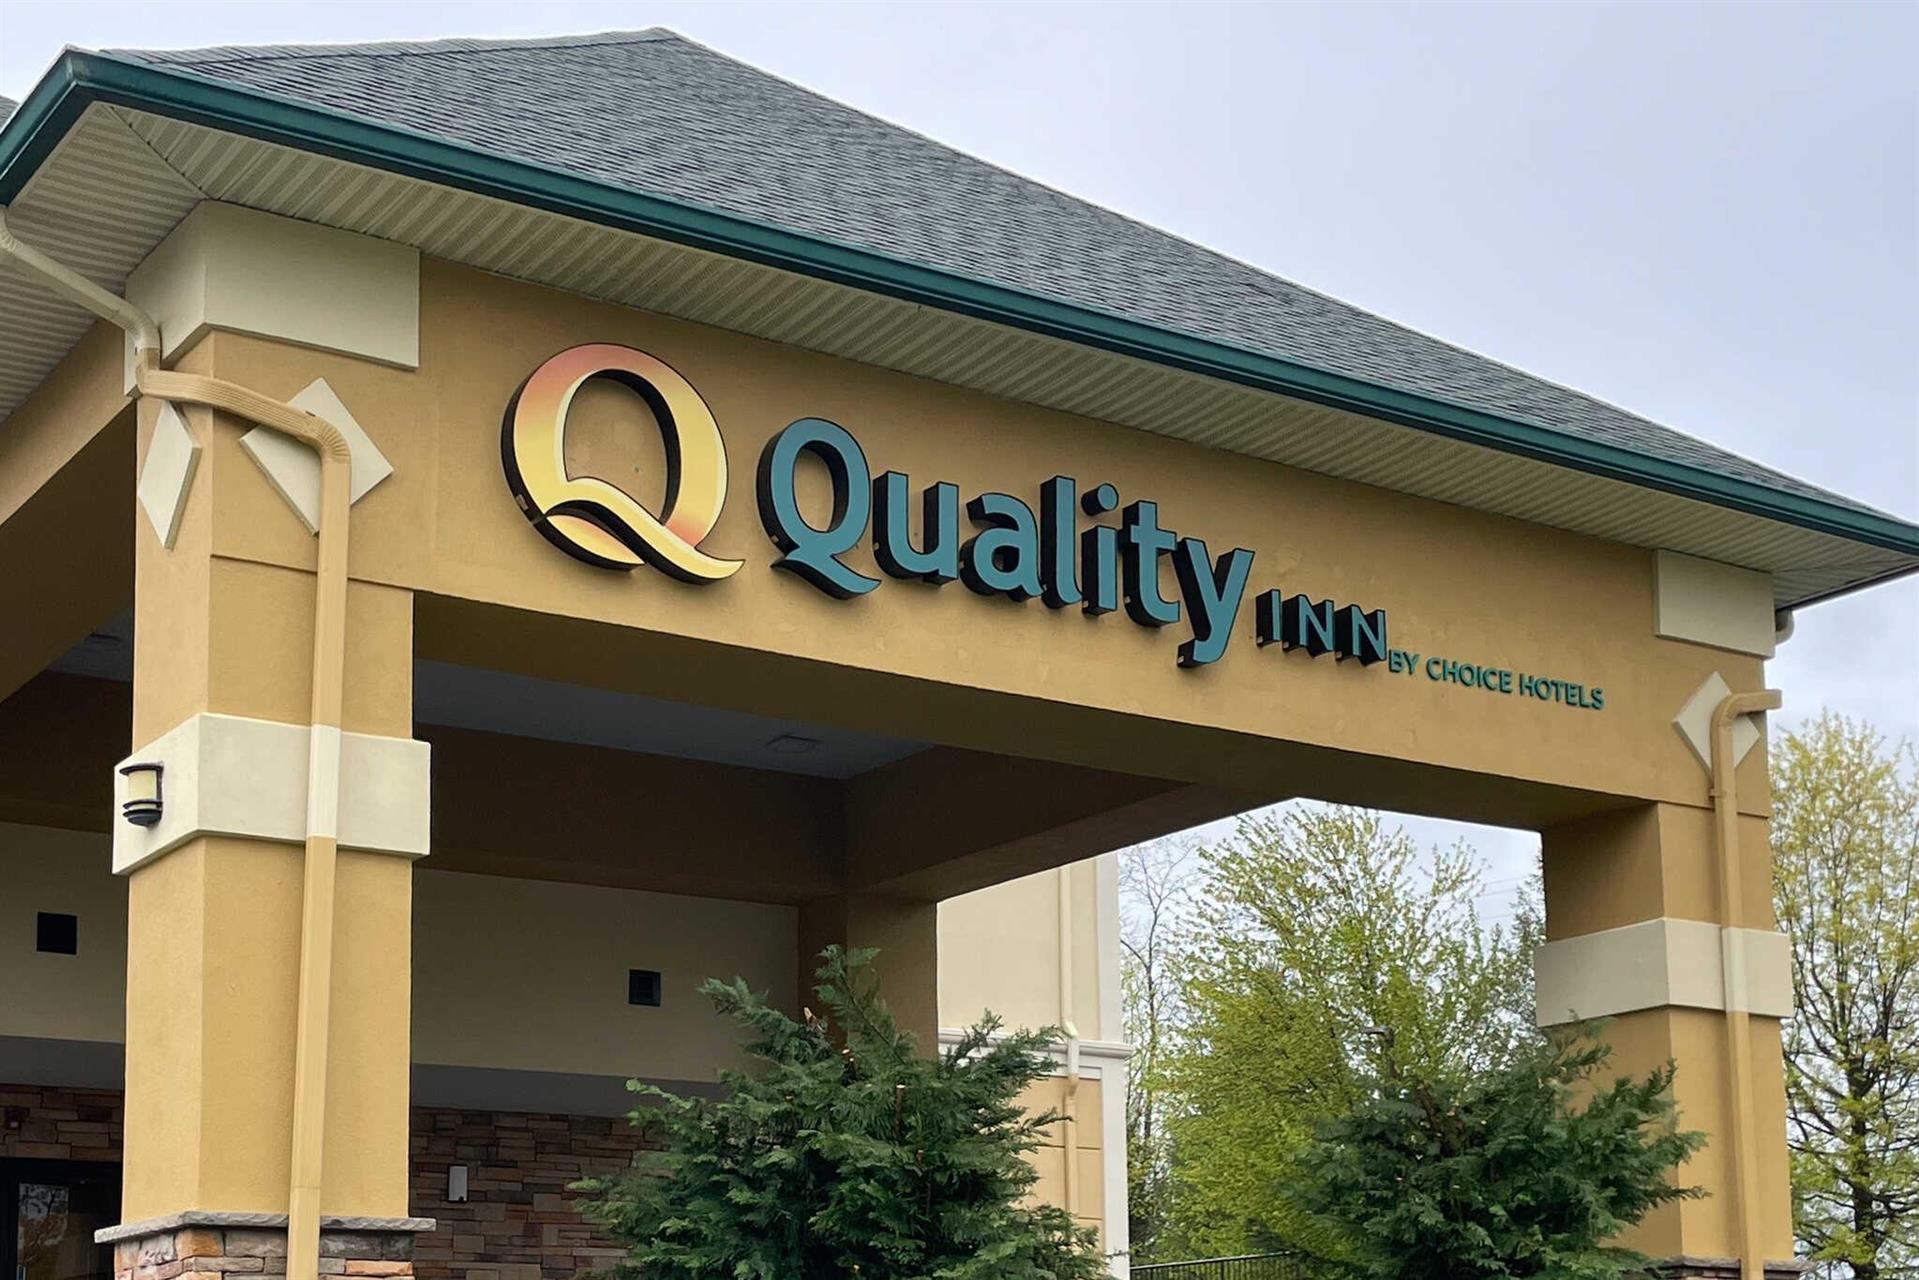 Quality Inn Hackettstown - Long Valley in Hackettstown, NJ